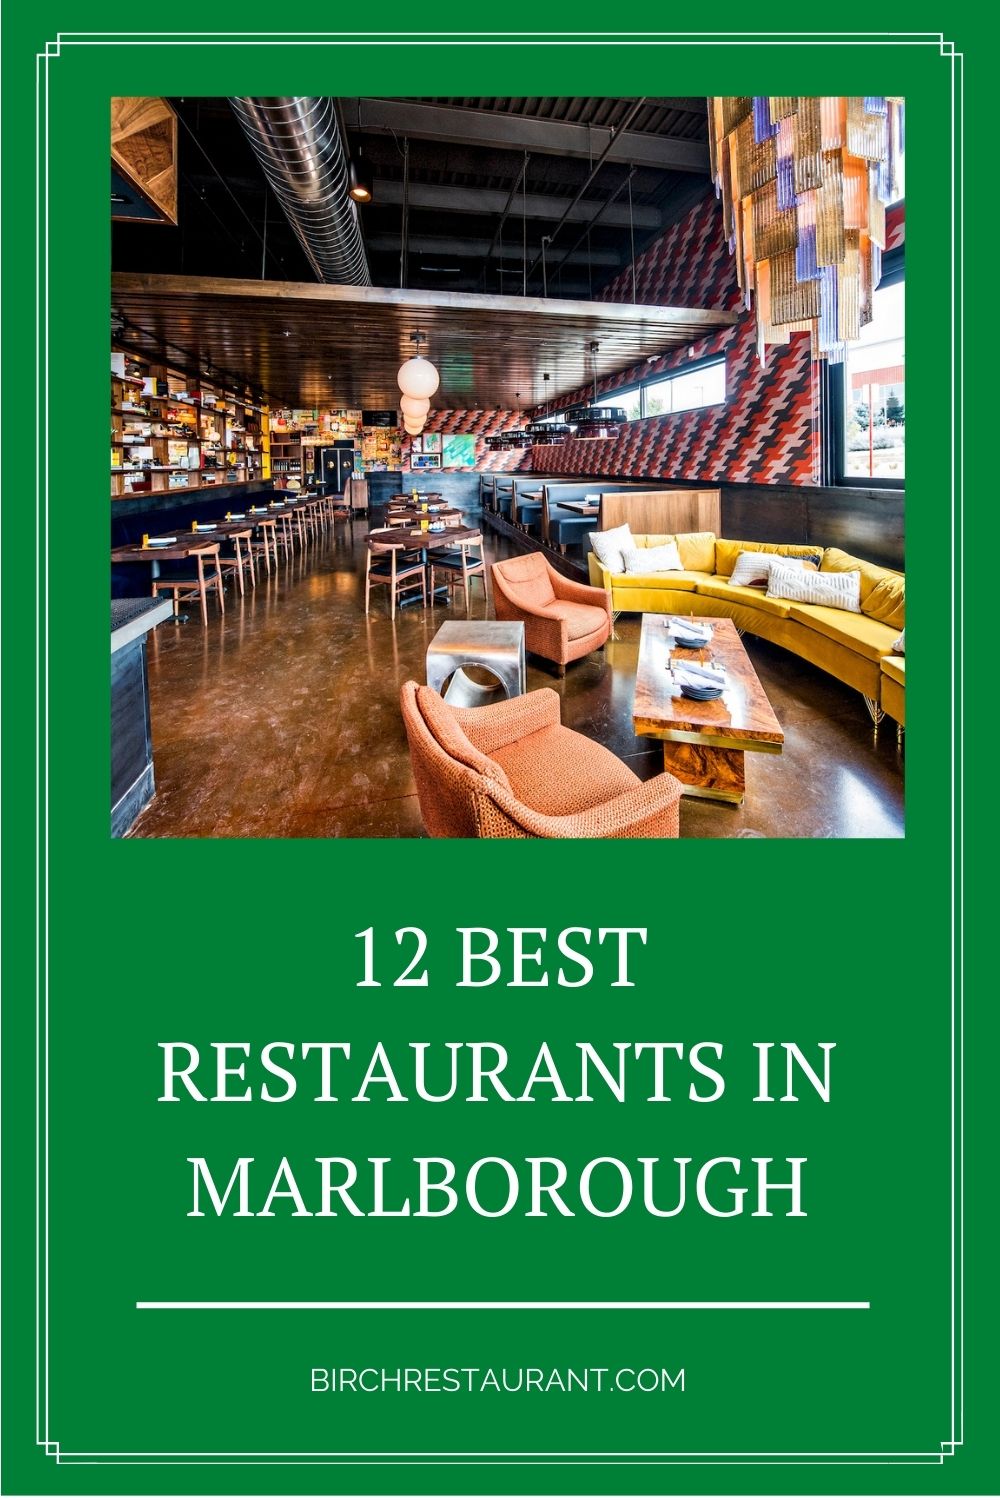 Best Restaurants in Marlborough